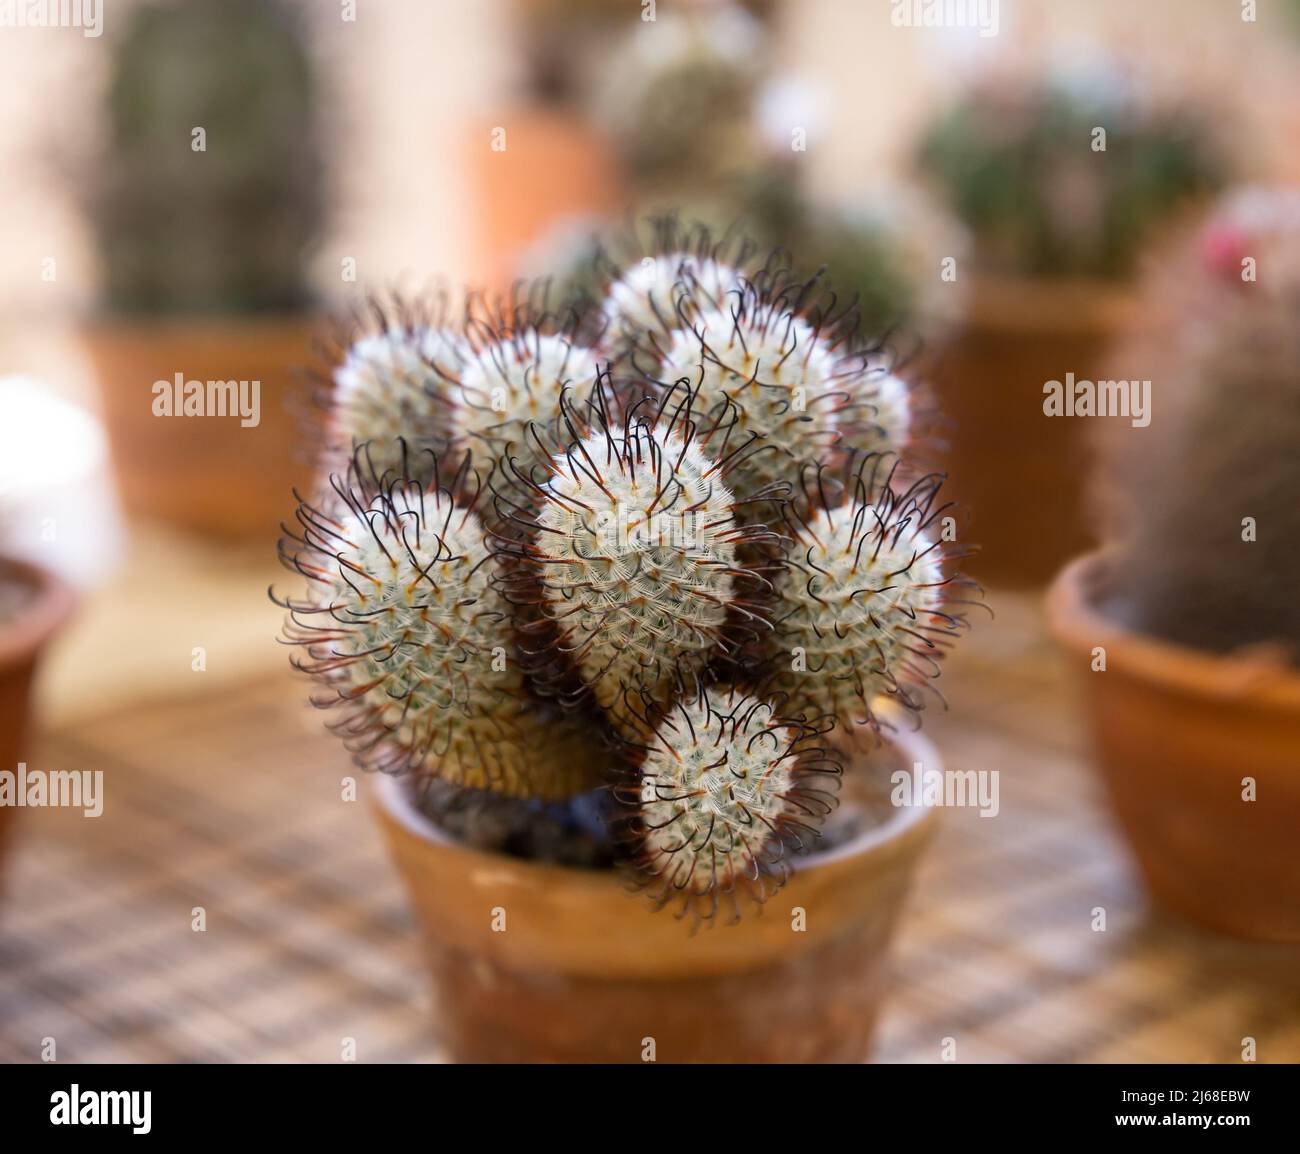 Cactus Mammillaria perezdelarosae en maceta de cerámica. Cactus blanco esponjoso con espinas curvas oscuras y largas Foto de stock